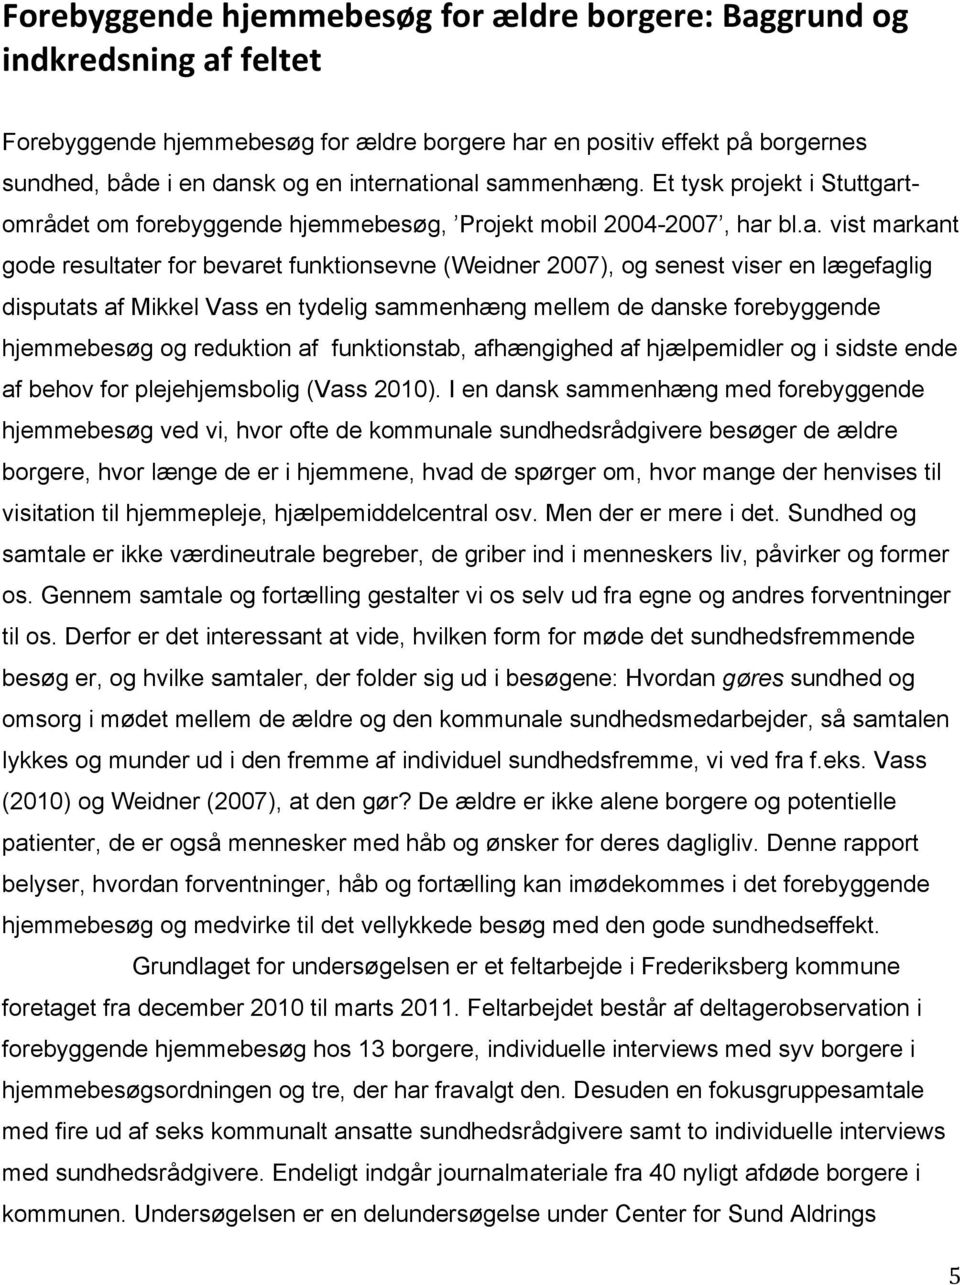 ional sammenhæng. Et tysk projekt i Stuttgartområdet om forebyggende hjemmebesøg, Projekt mobil 2004-2007, har bl.a. vist markant gode resultater for bevaret funktionsevne (Weidner 2007), og senest